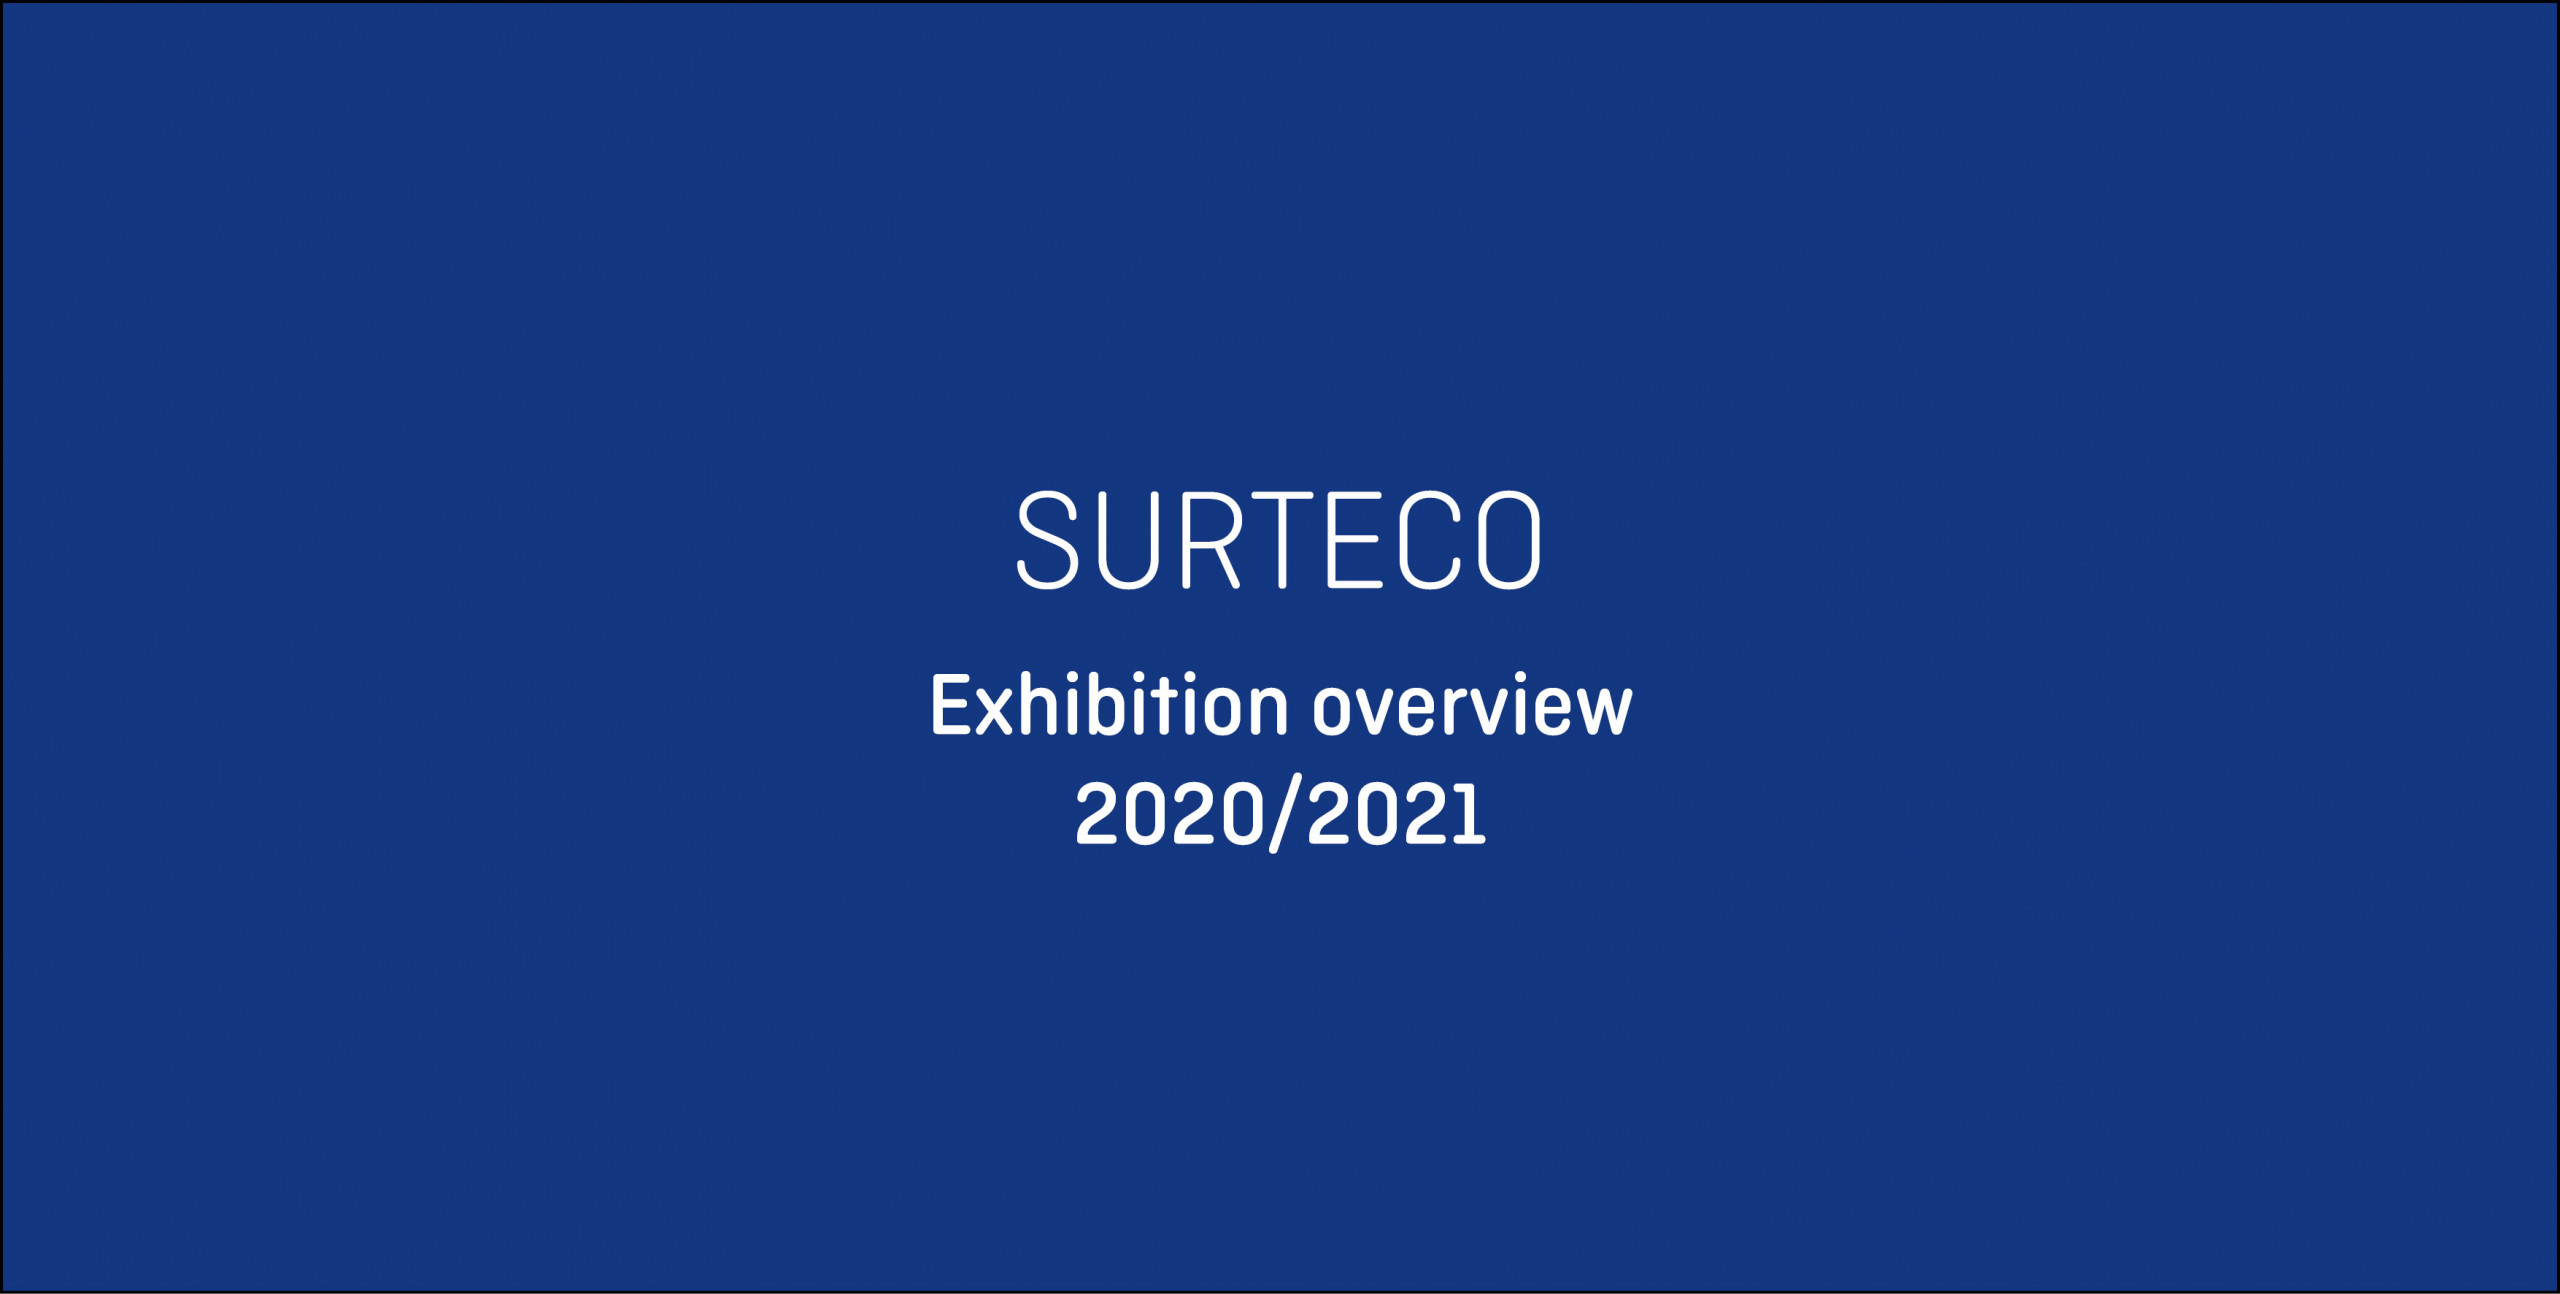 Messeübersicht 2020/2021 – 
SURTECO ist mit dabei!